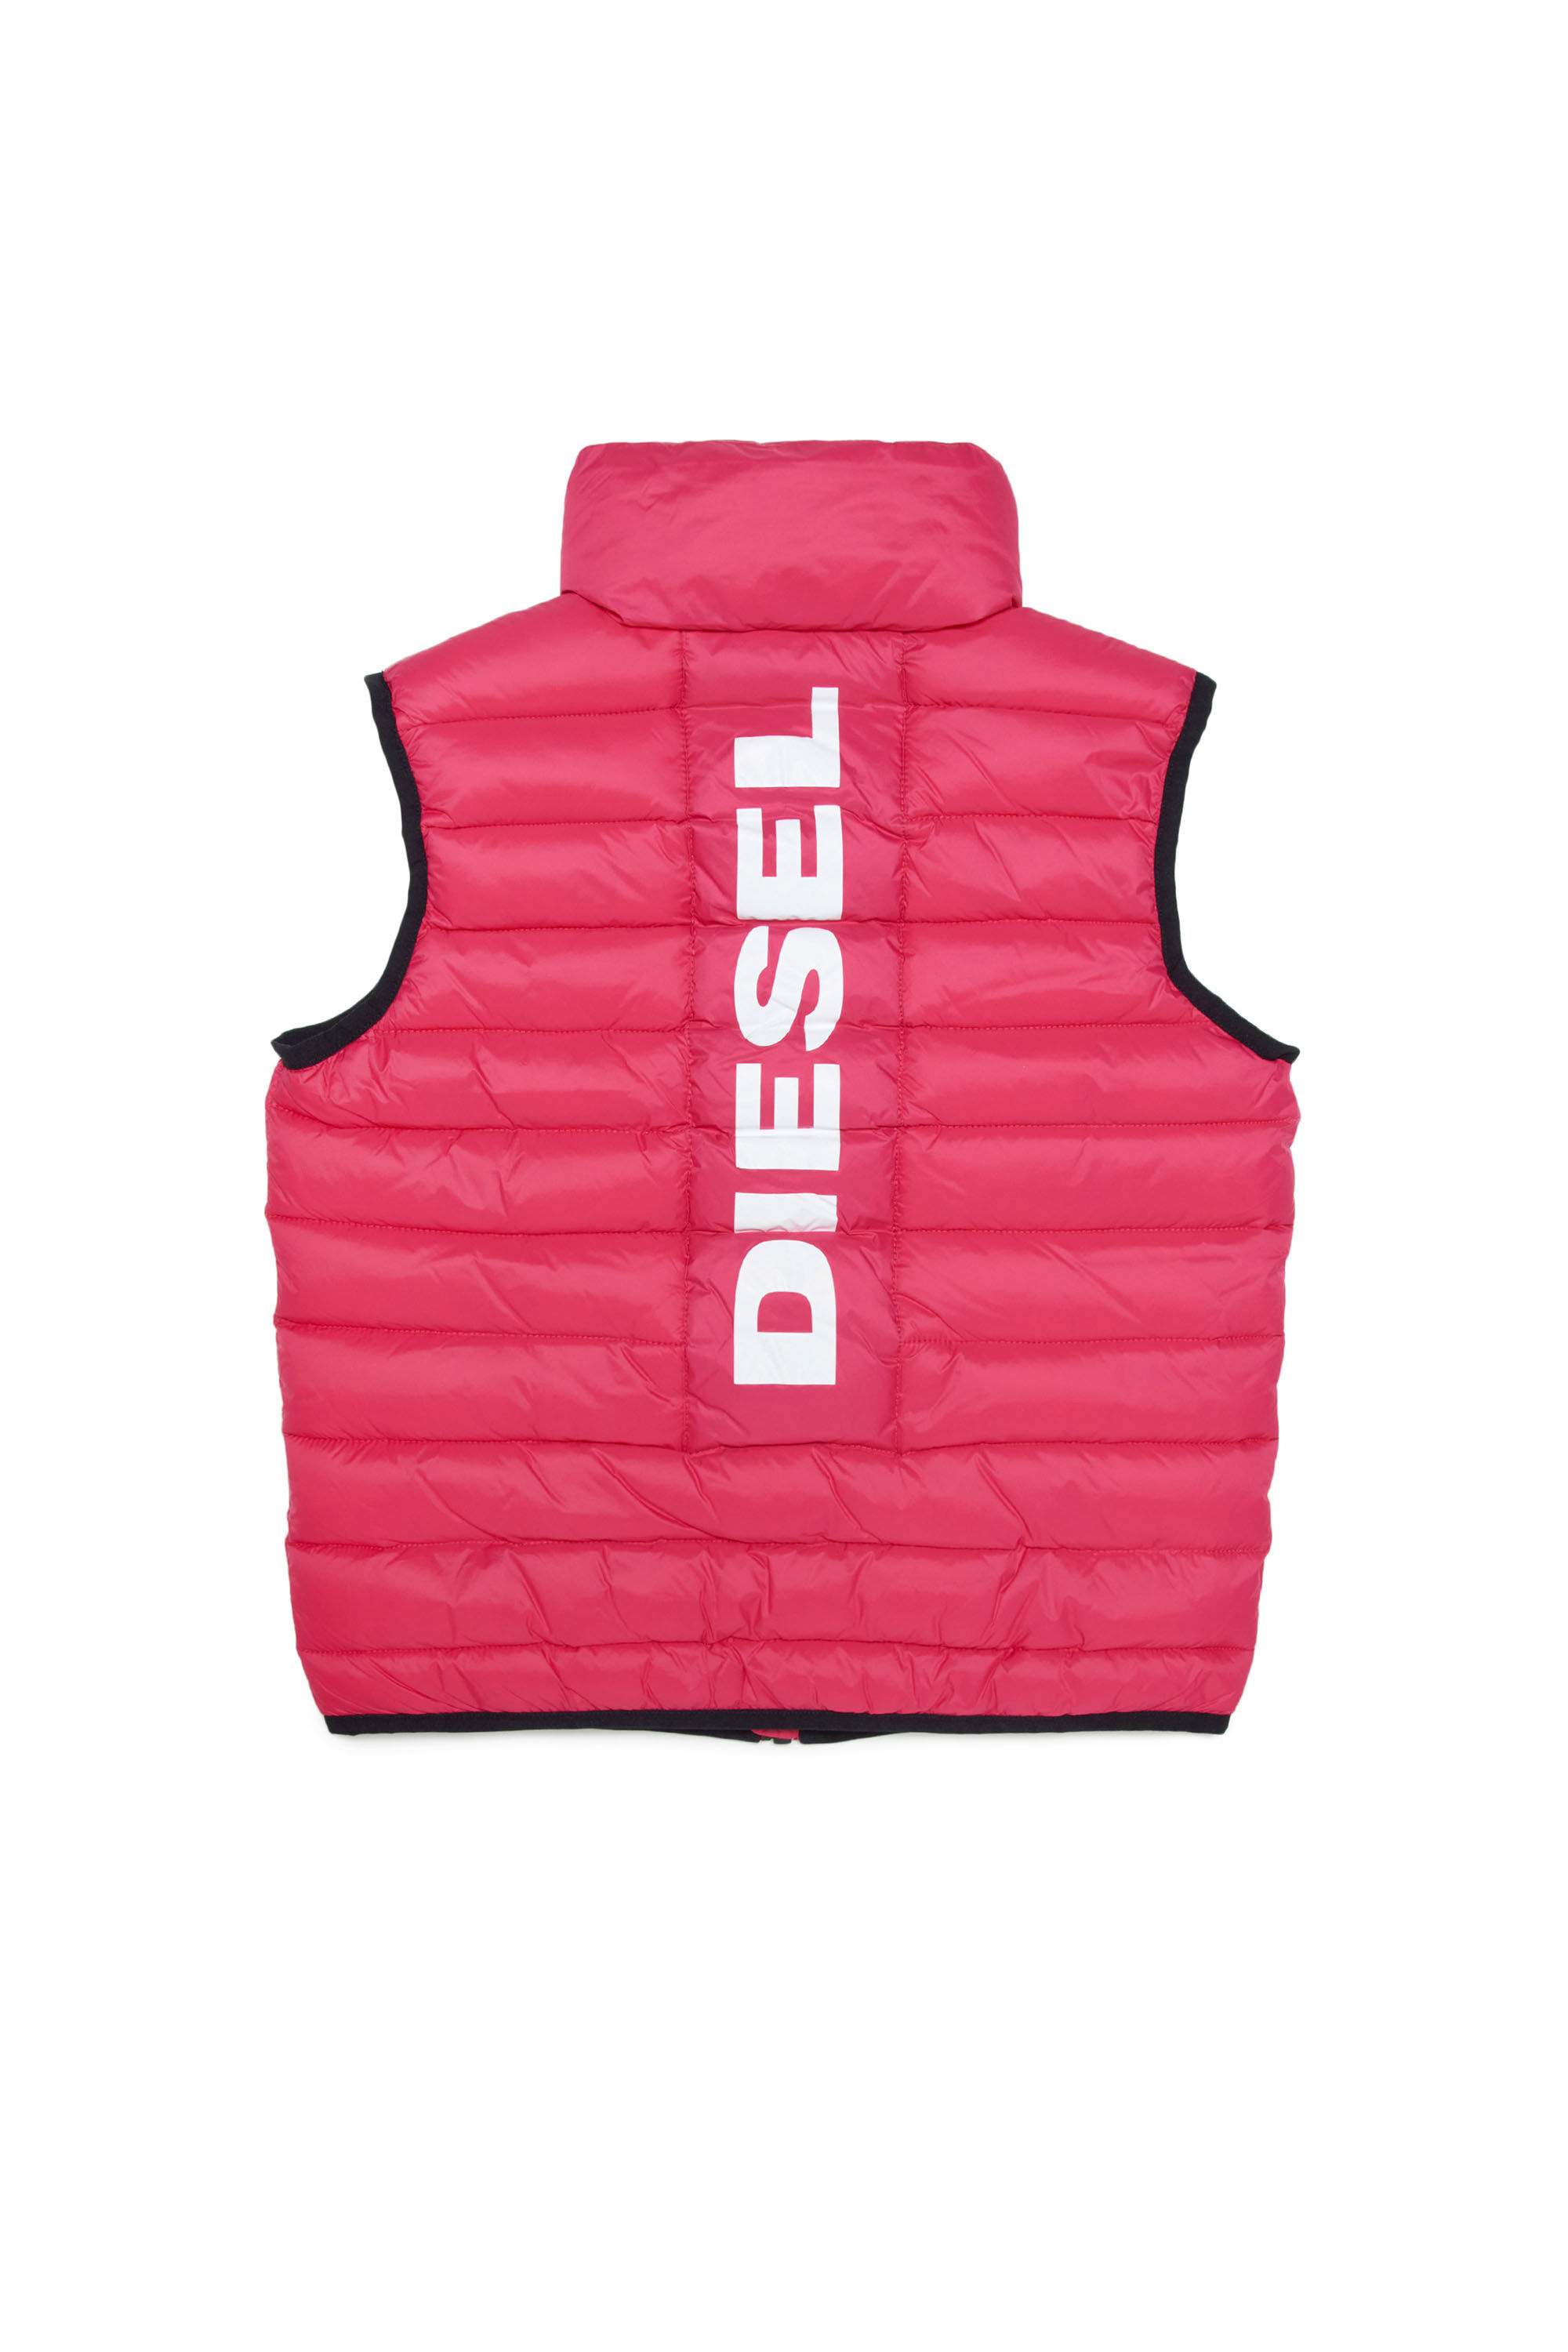 Diesel - JOLICE-SL, Rose - Image 2